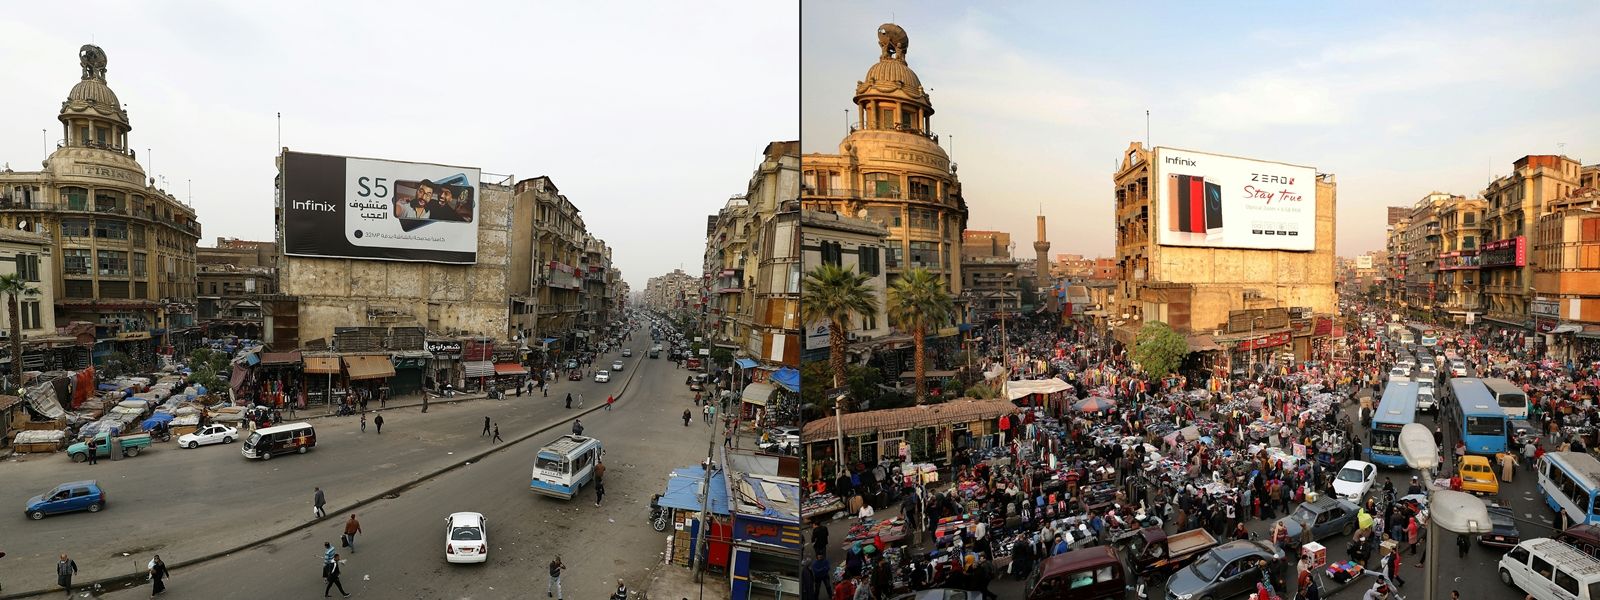 AFP-ภาพเปรียบเทียบกรุงไคโรของอียิปต์ช่วงก่อนและหลังประกาศมาตรการกักตัวและเคอร์ฟิวเพื่อป้องกันโควิด-COVID19.jpg